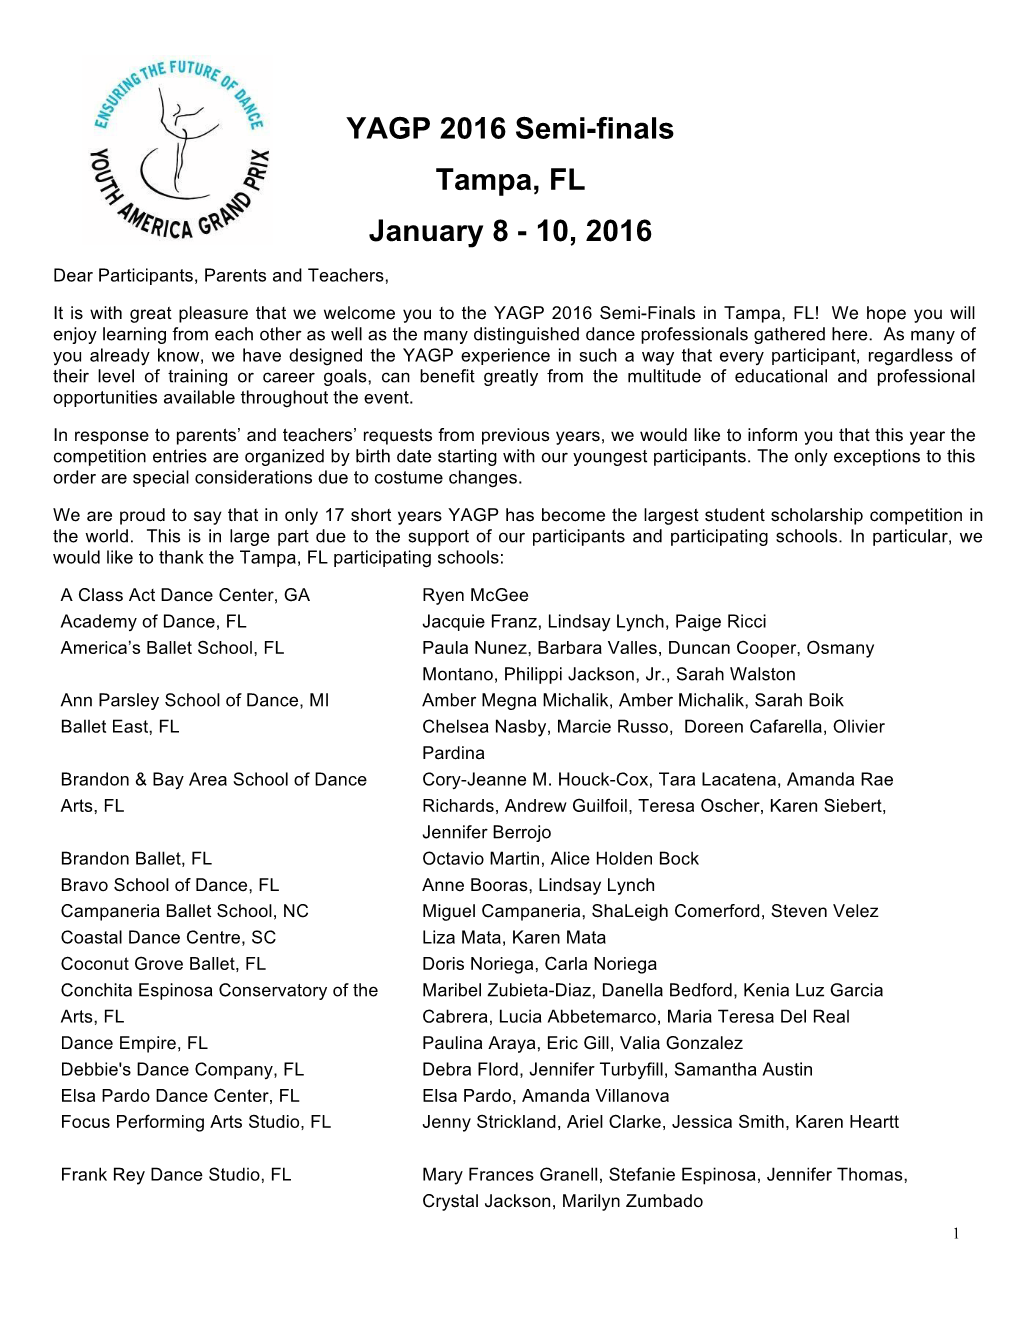 YAGP 2016 Semi-Finals Tampa, FL January 8 - 10, 2016